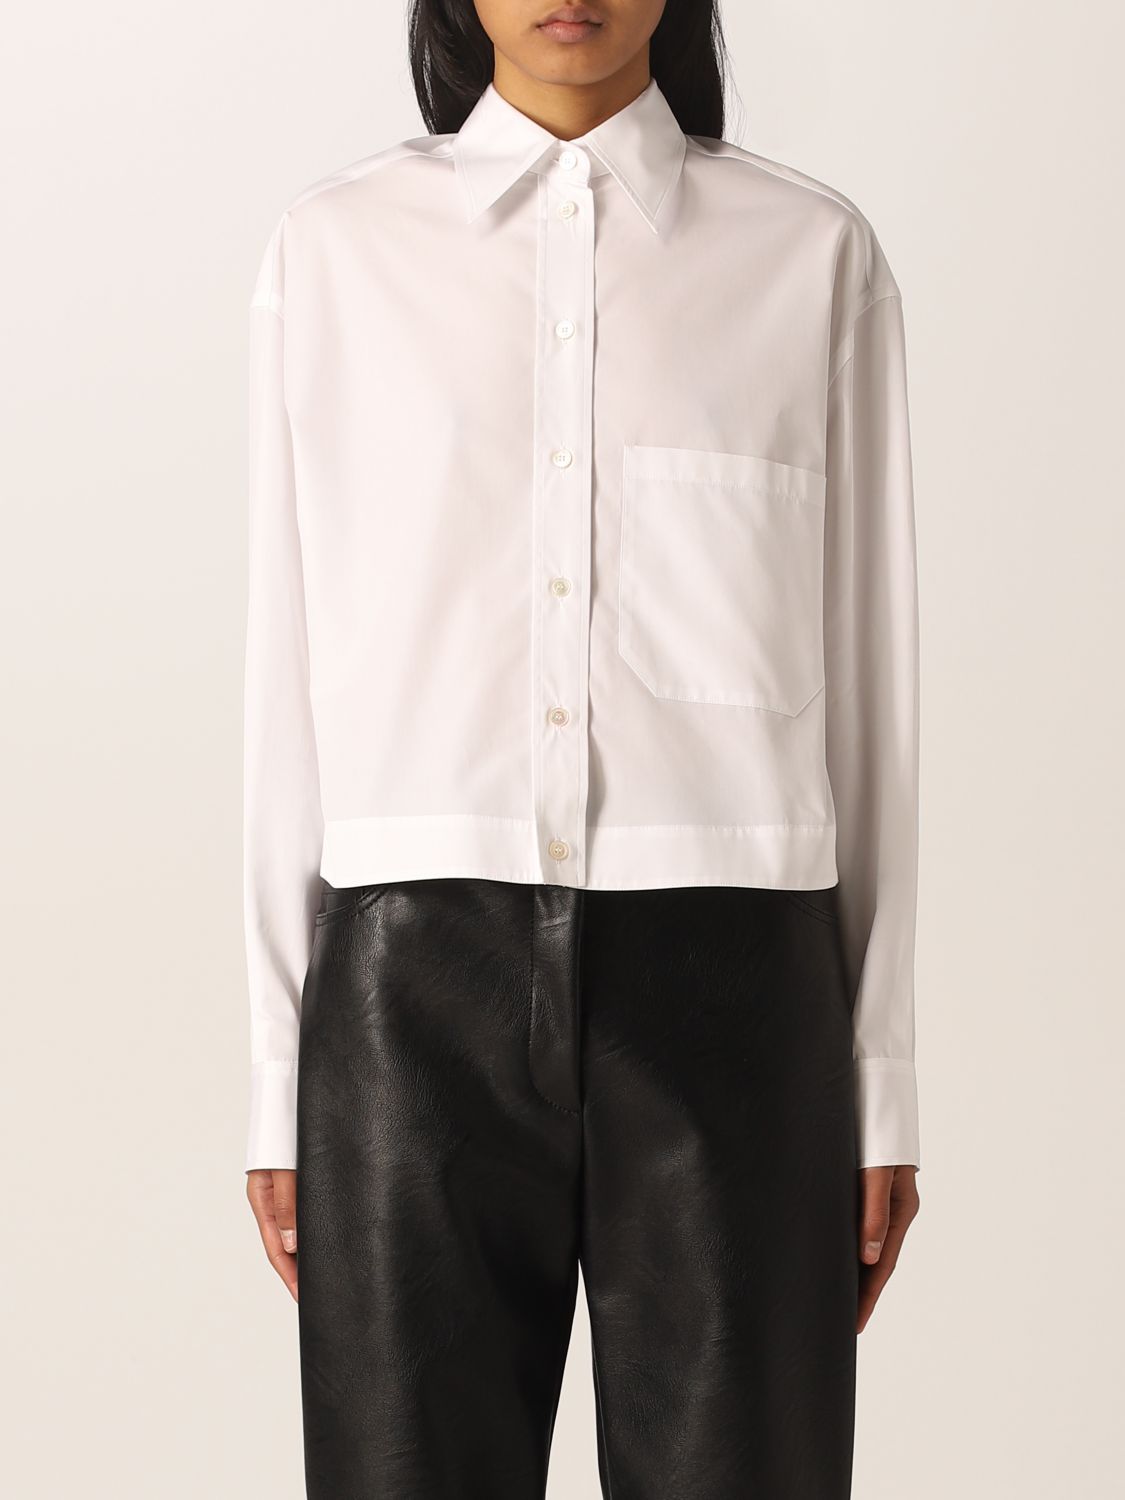 STELLA MCCARTNEY: cotton cropped shirt - White | Stella Mccartney shirt ...